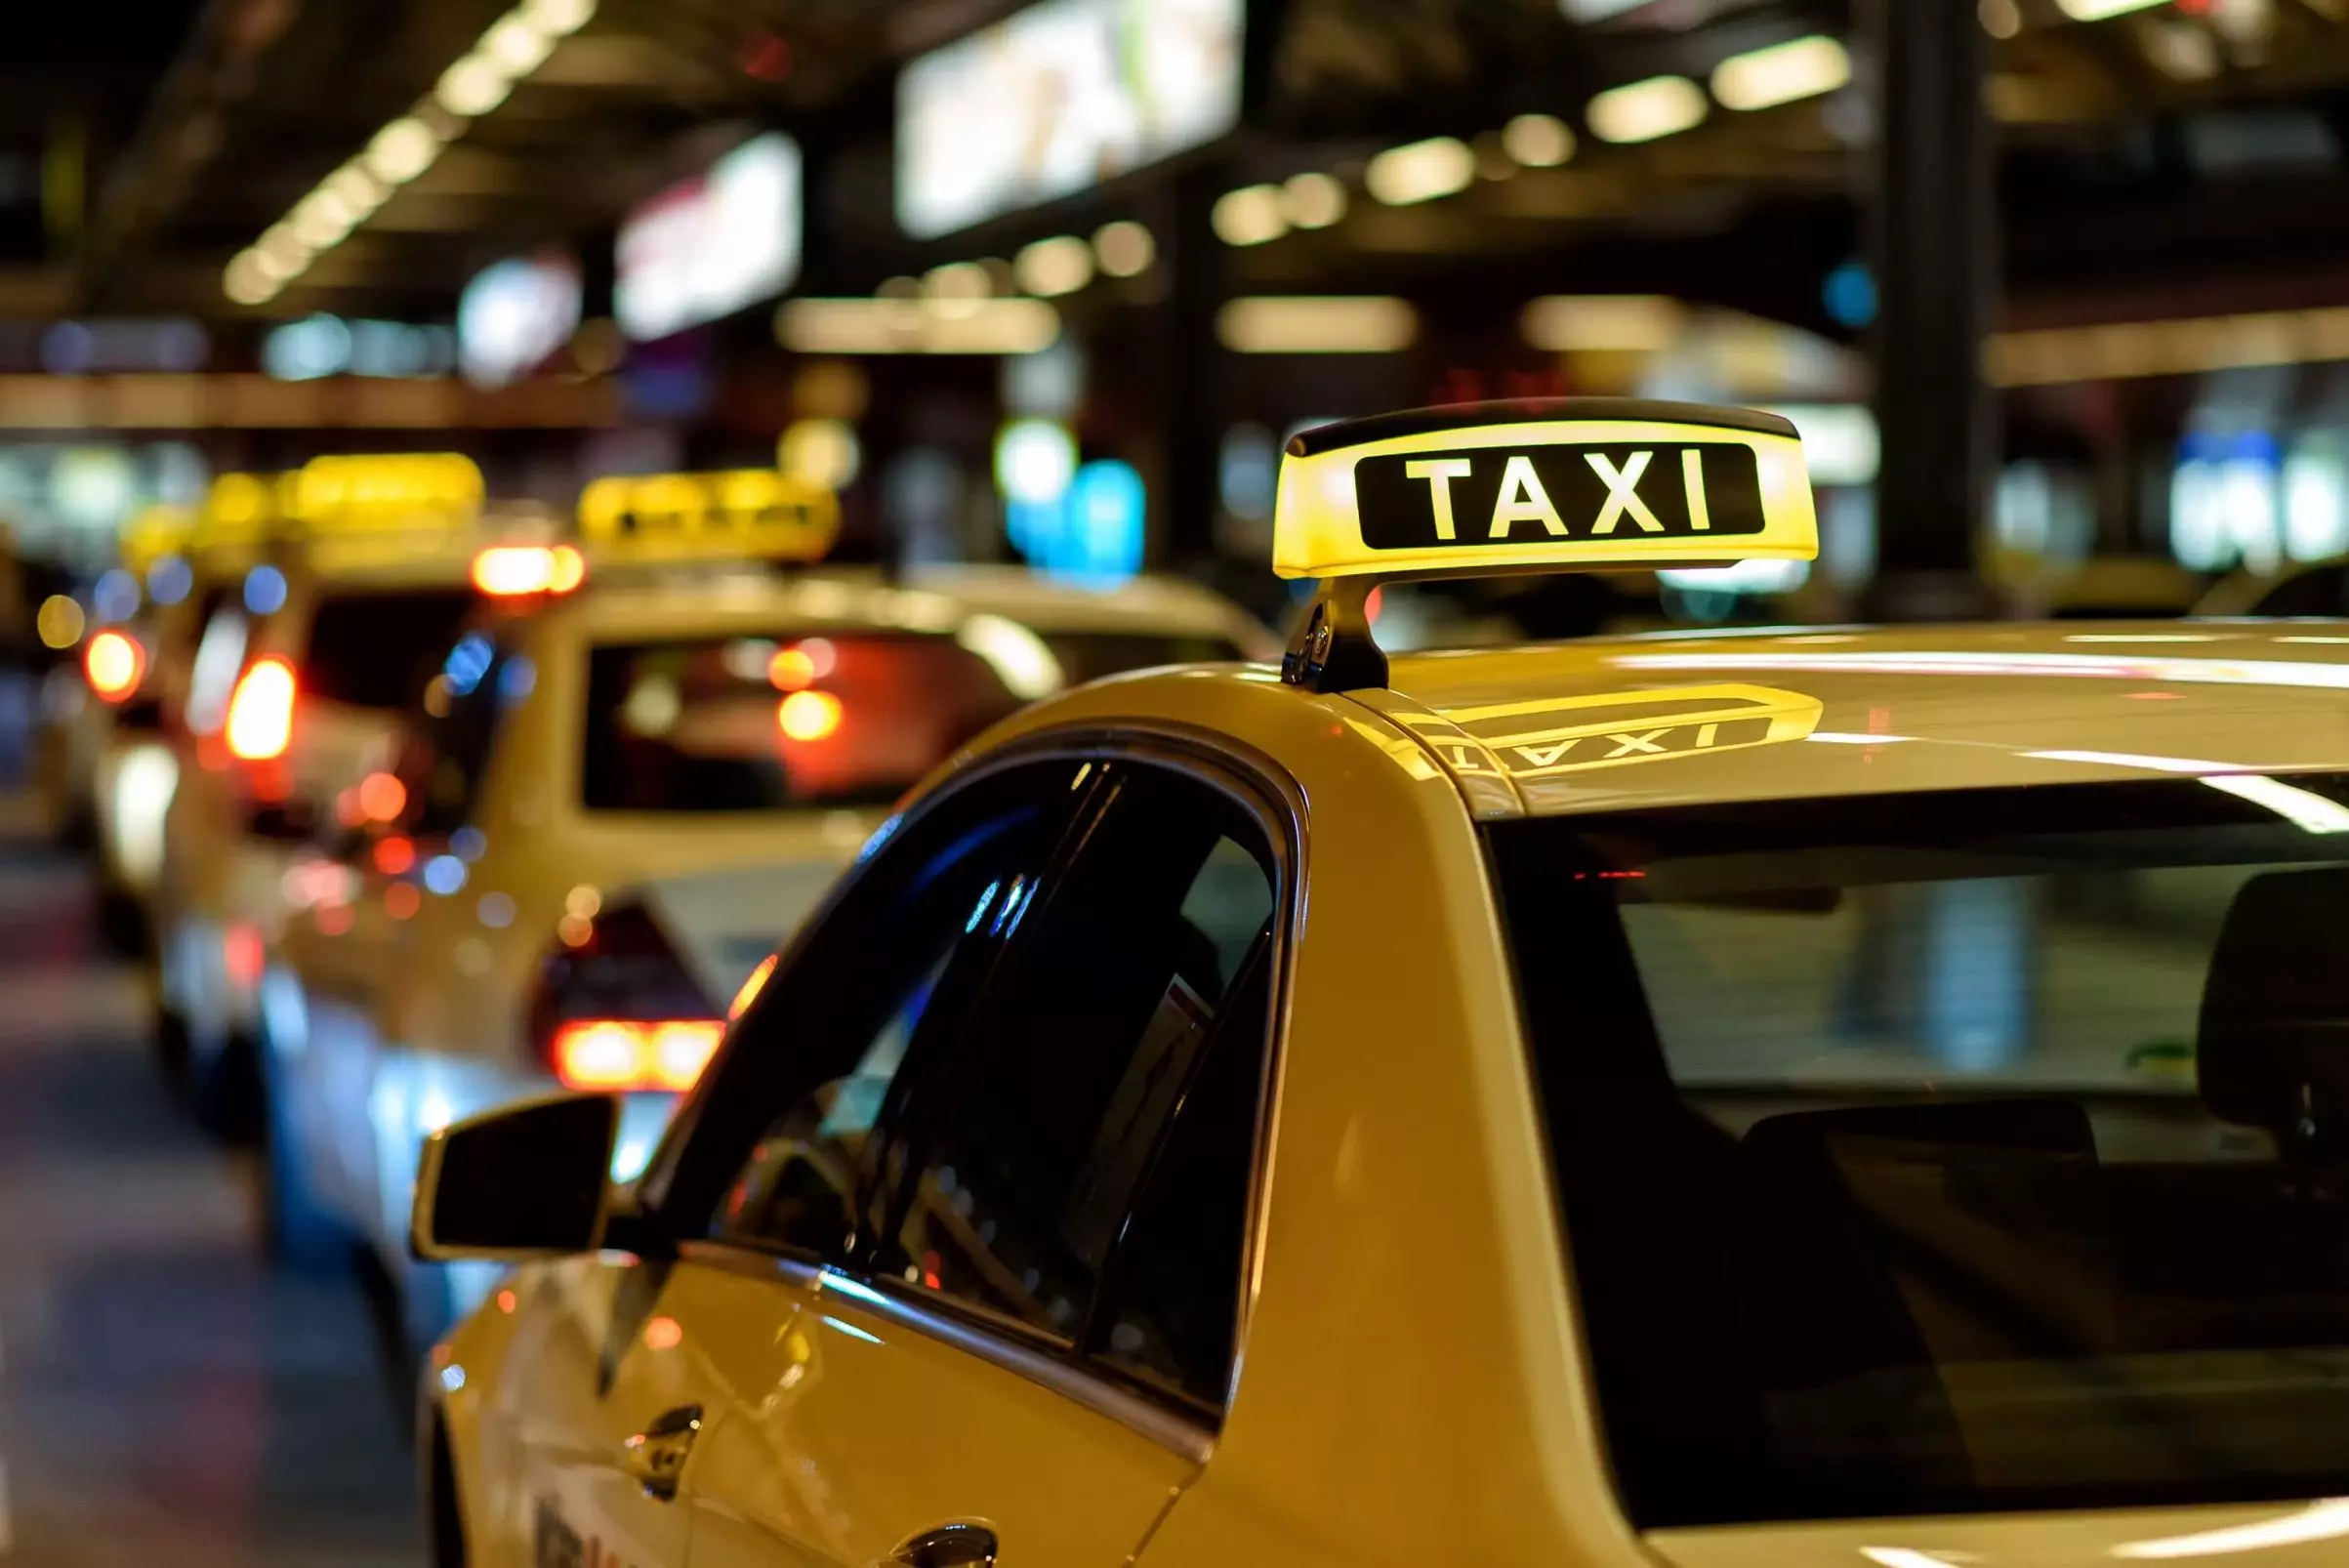 Ölkədə taksi qiymətləri bahalaşdı